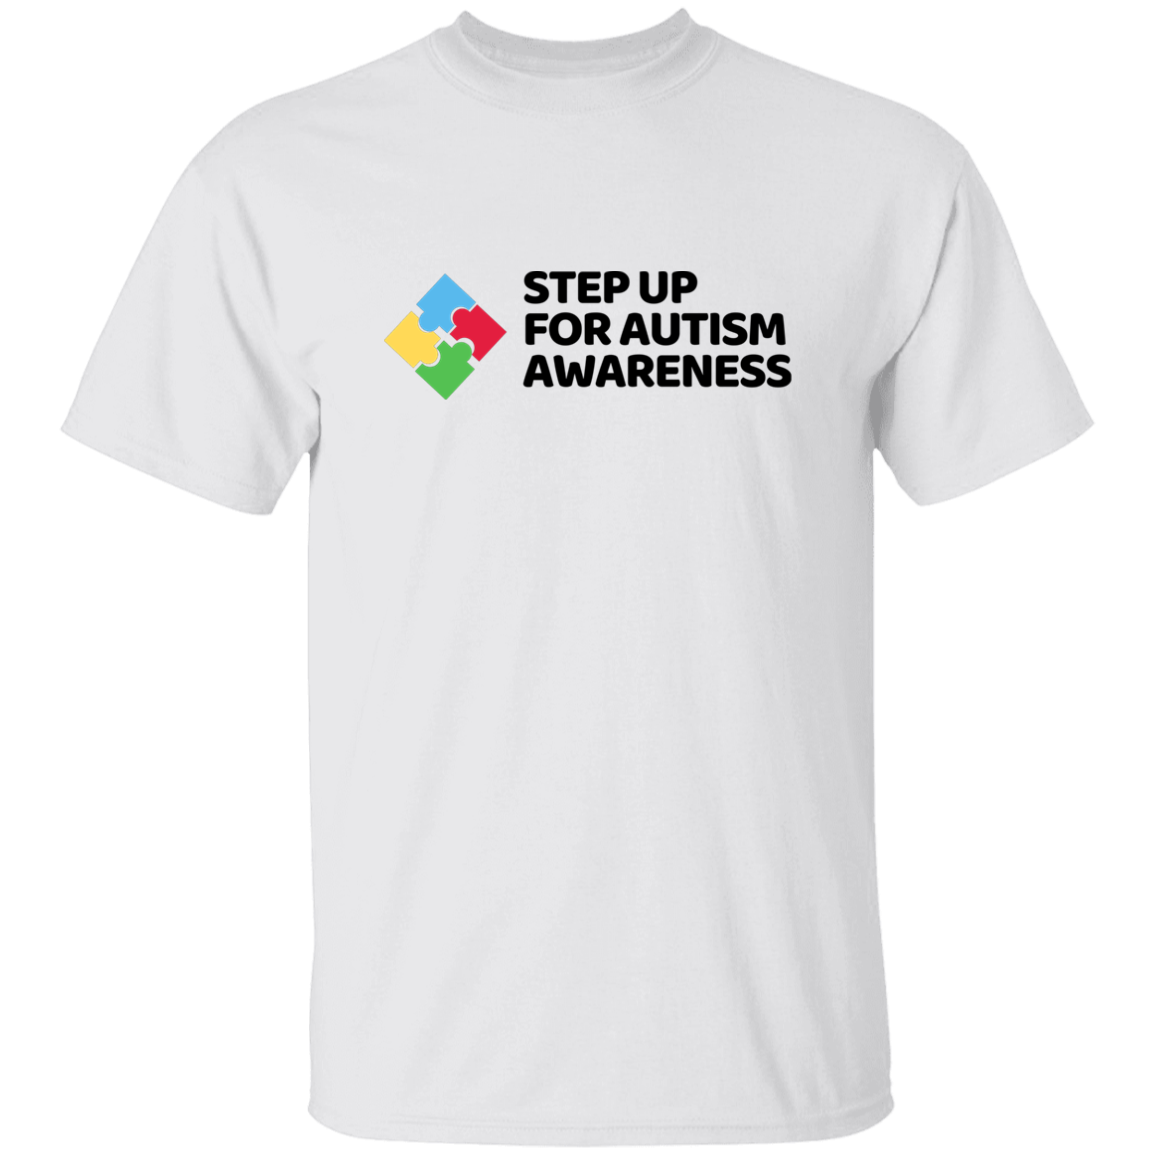 Autism Awareness (Black Print) G500 5.3 oz. T-Shirt